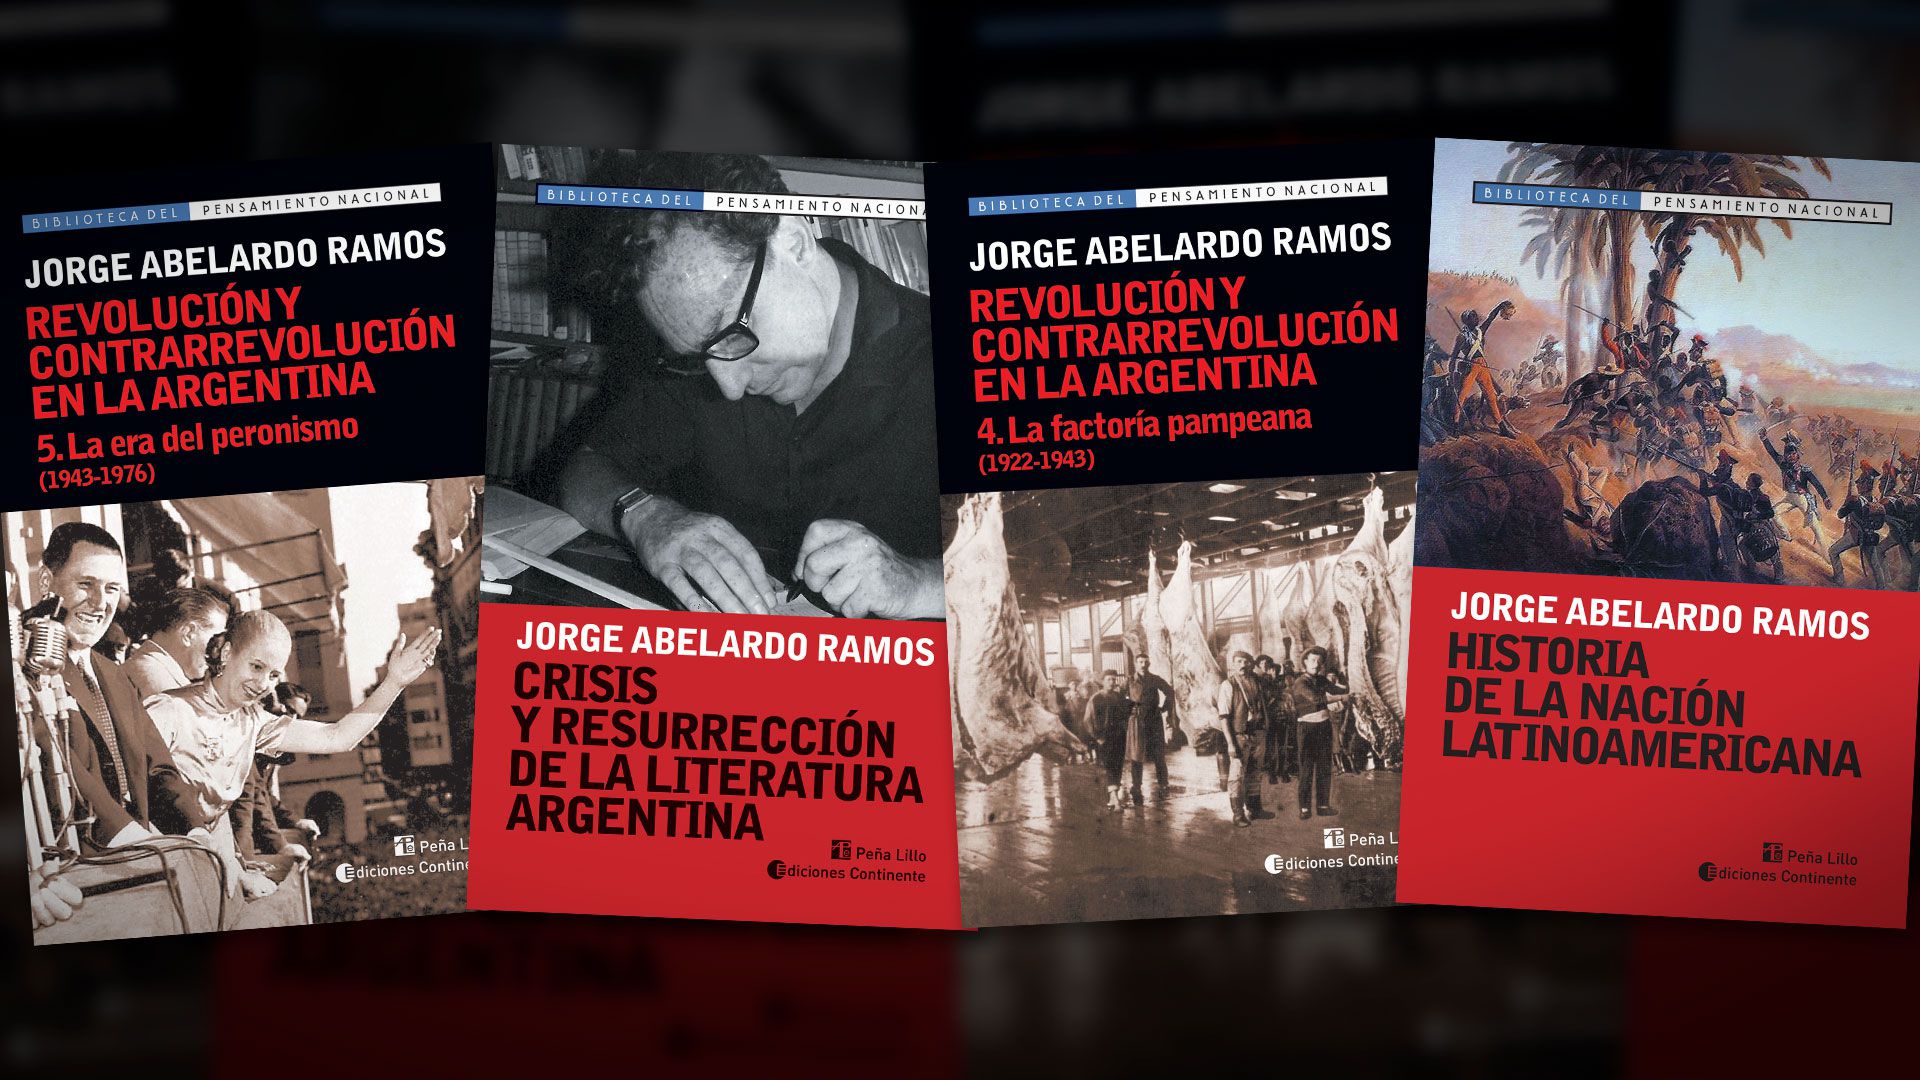 El historiador Jorge Abelardo Ramos fue dueño de una prosa incisiva y muy amena, sostenida además por una profunda erudición